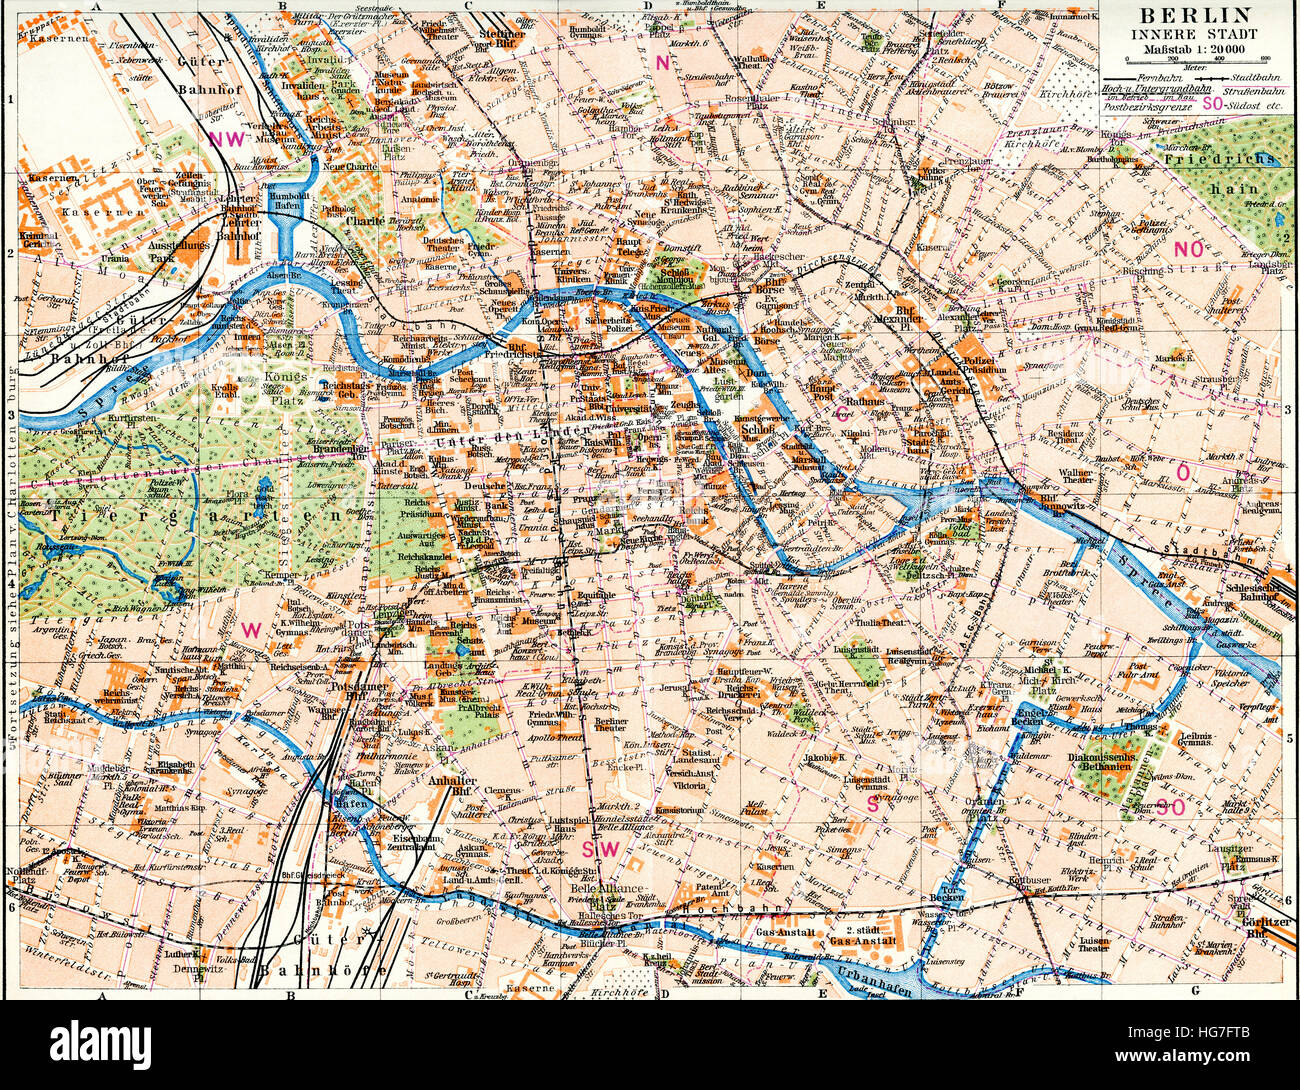 Karte von Berlin, Deutschland c. 1924.  Aus Meyers Lexikon veröffentlicht 1924. Stockfoto